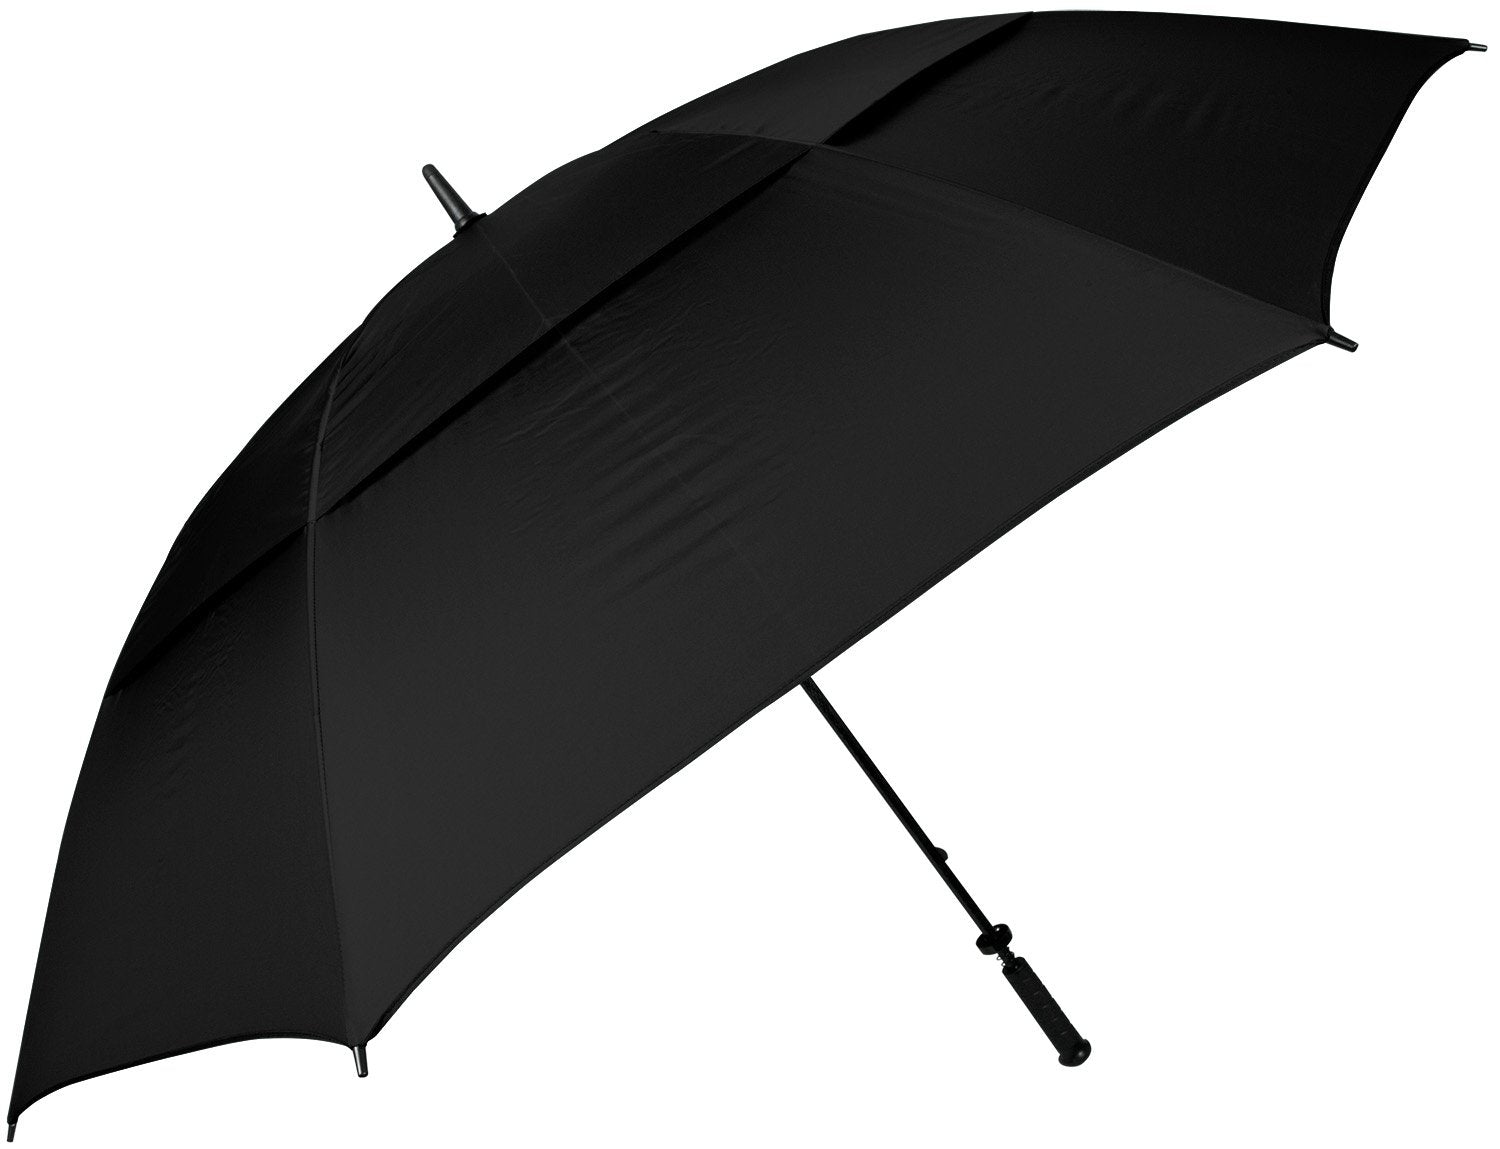 68" Guardian 2.0 Umbrella